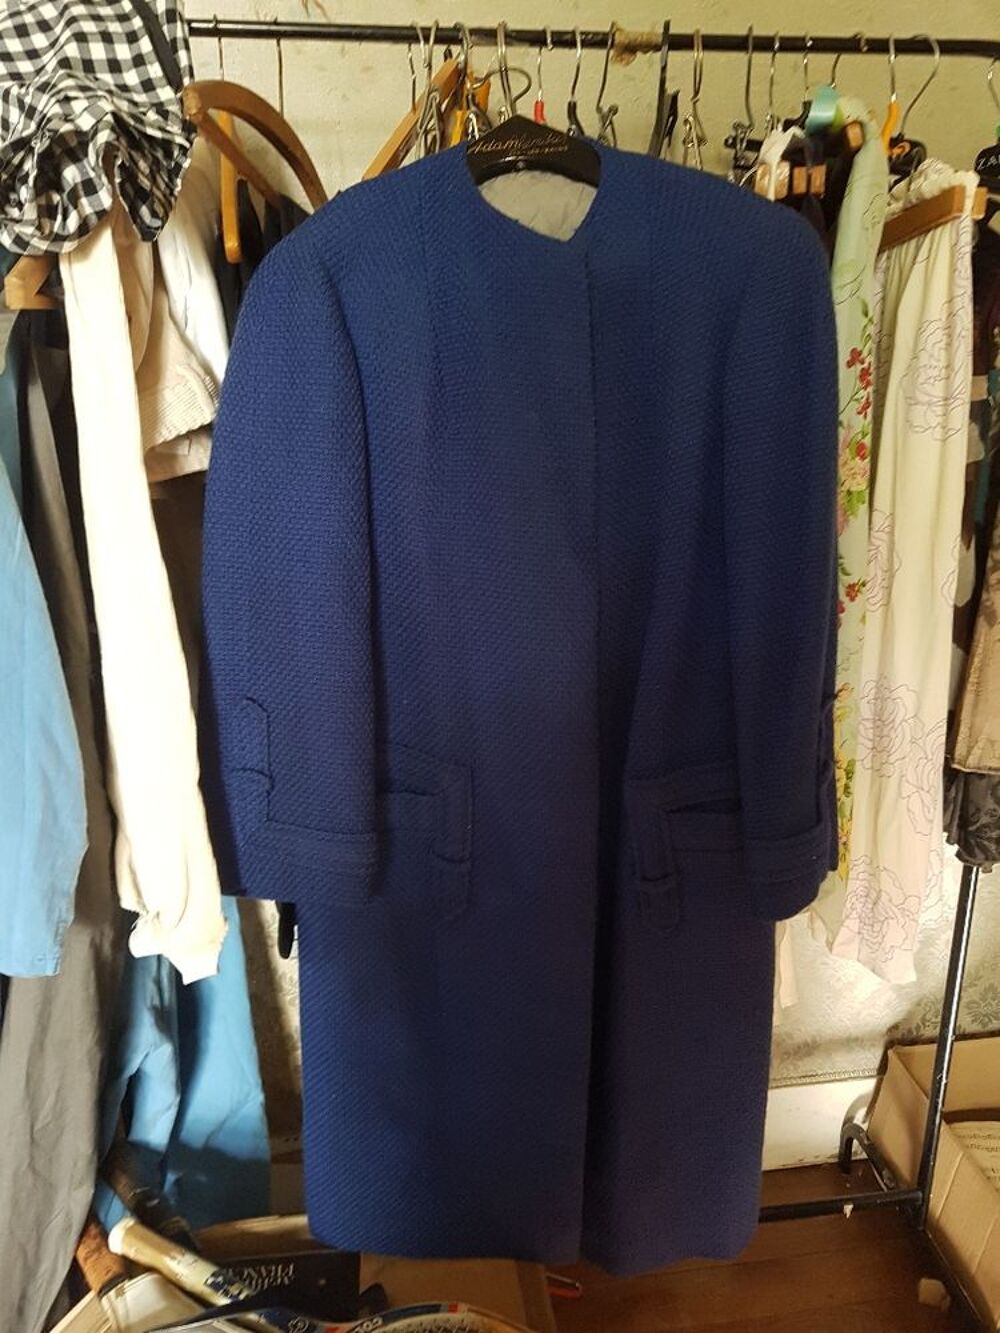 Manteau bleu en laine, doubl&eacute;, vintage
Vtements